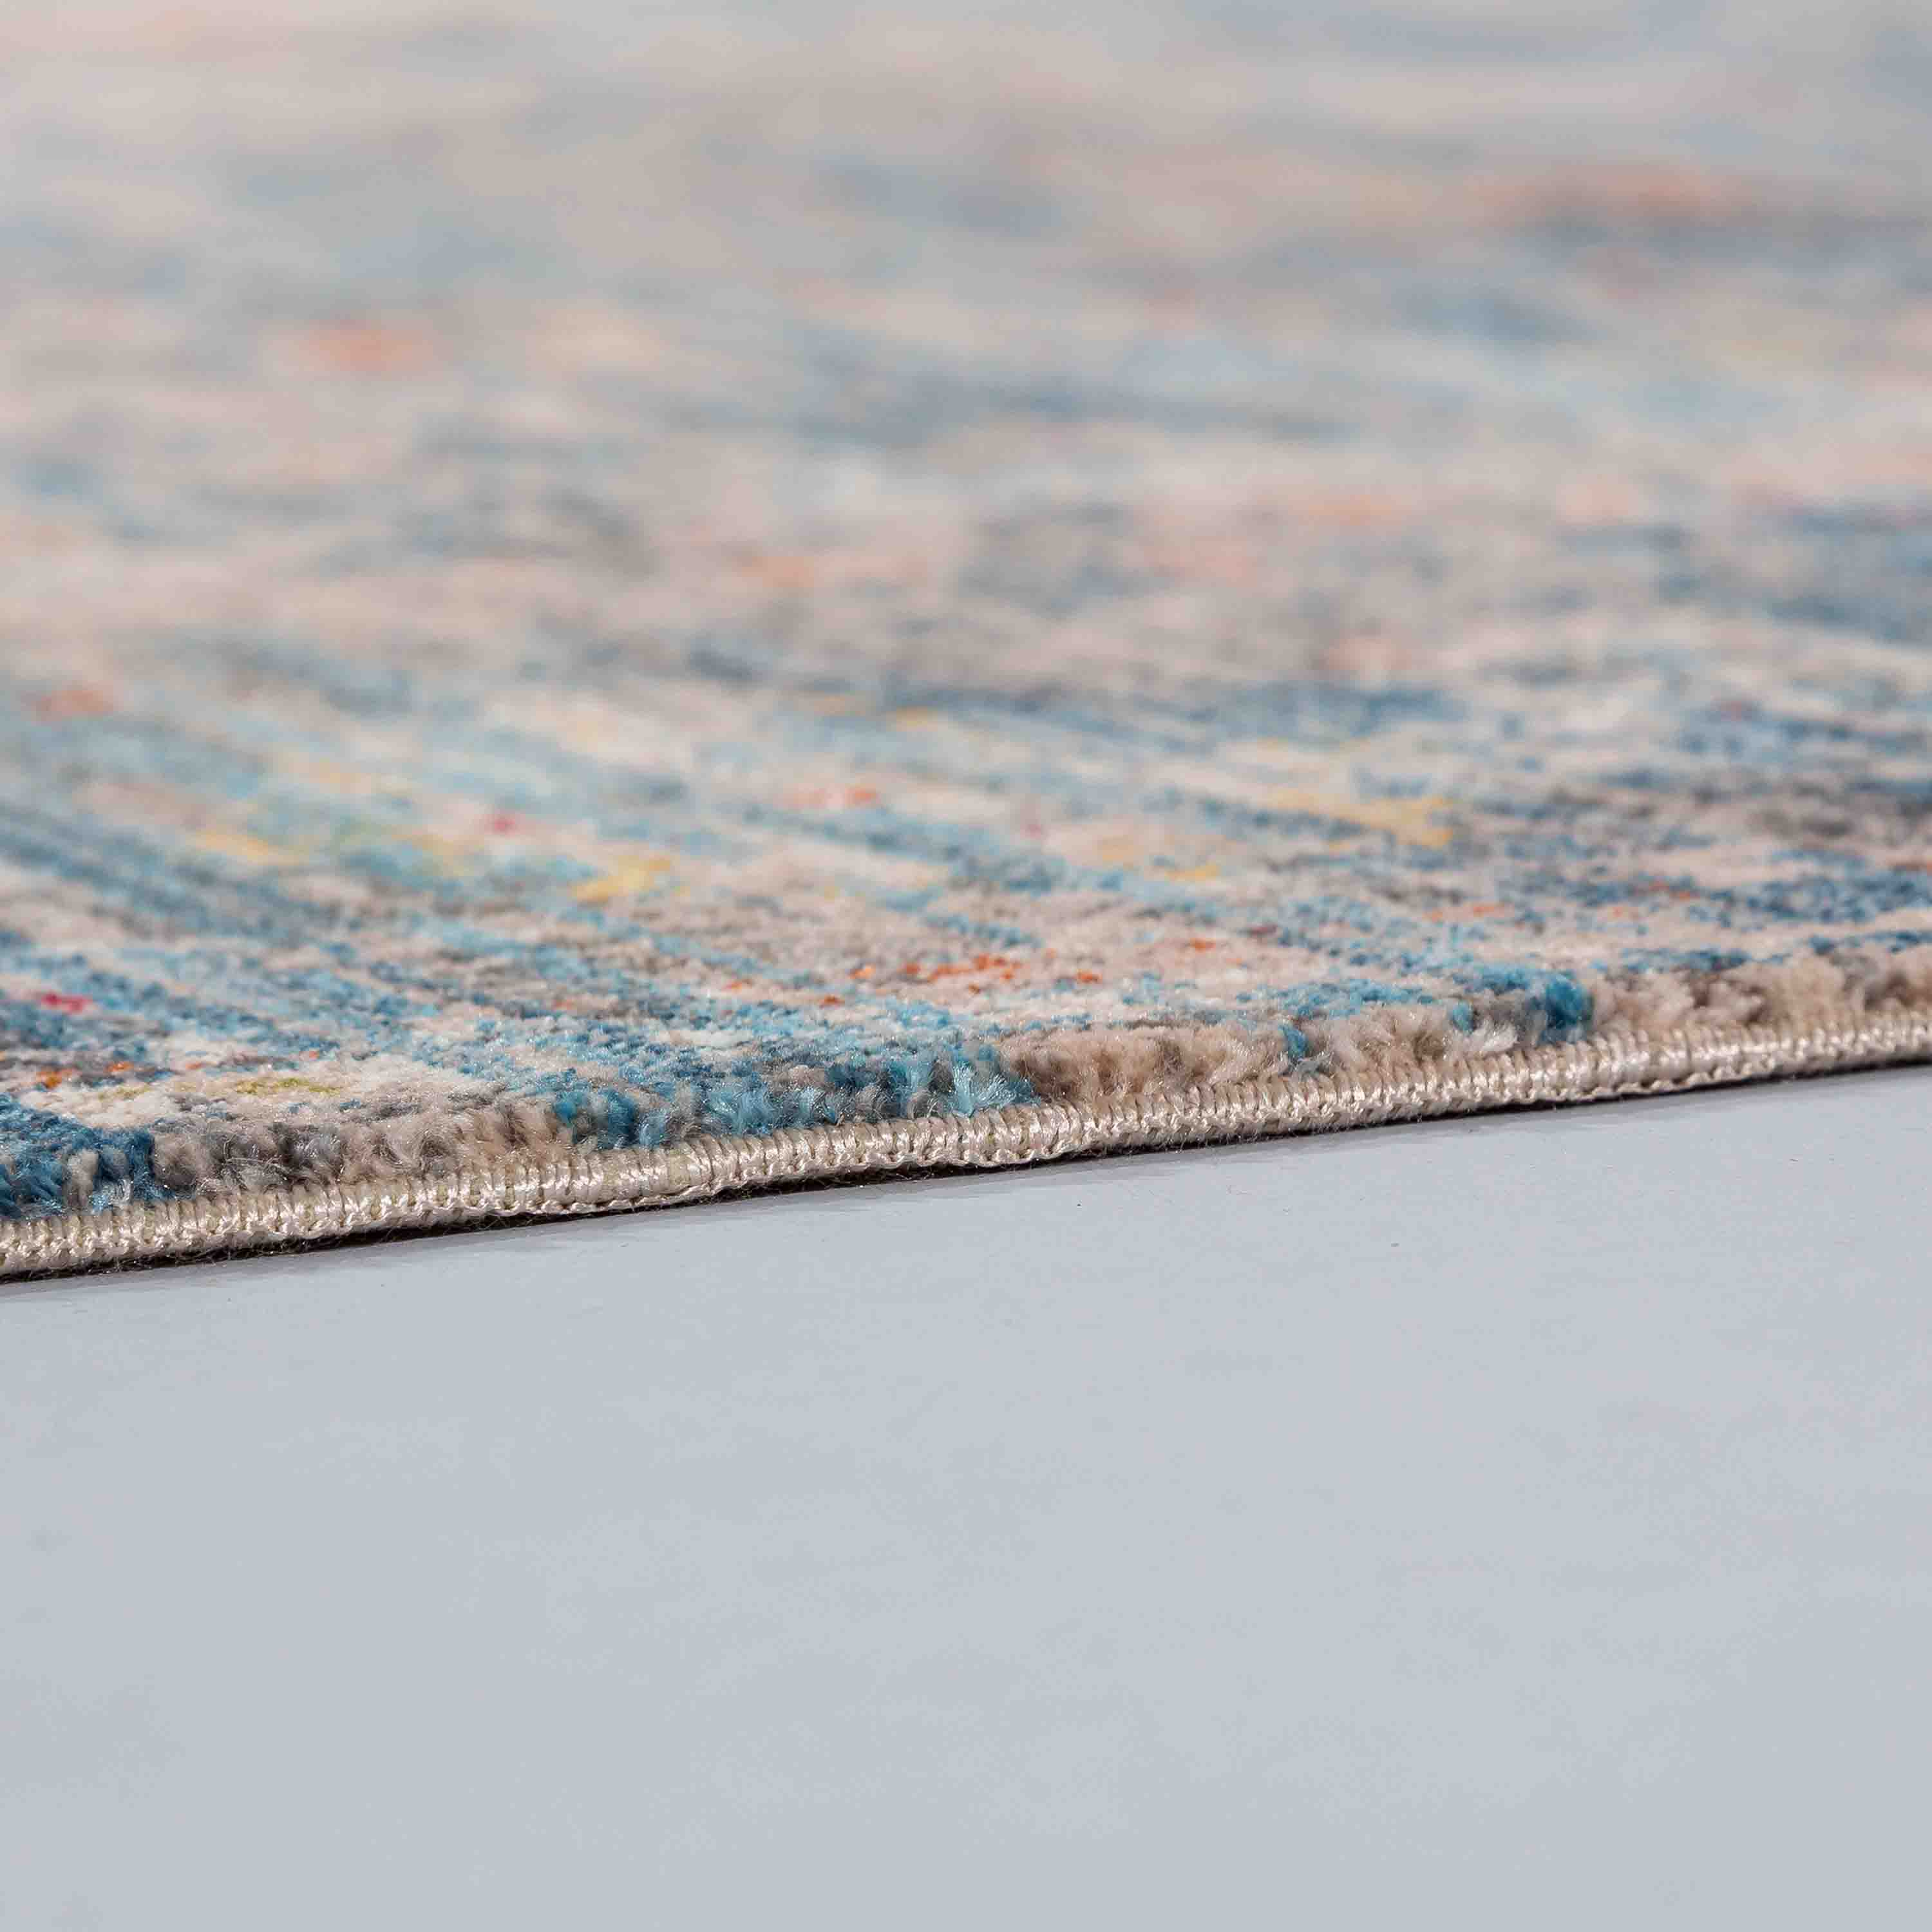 Schöner Wohnen Kollektion Teppich Mystik 70x140 cm Blau